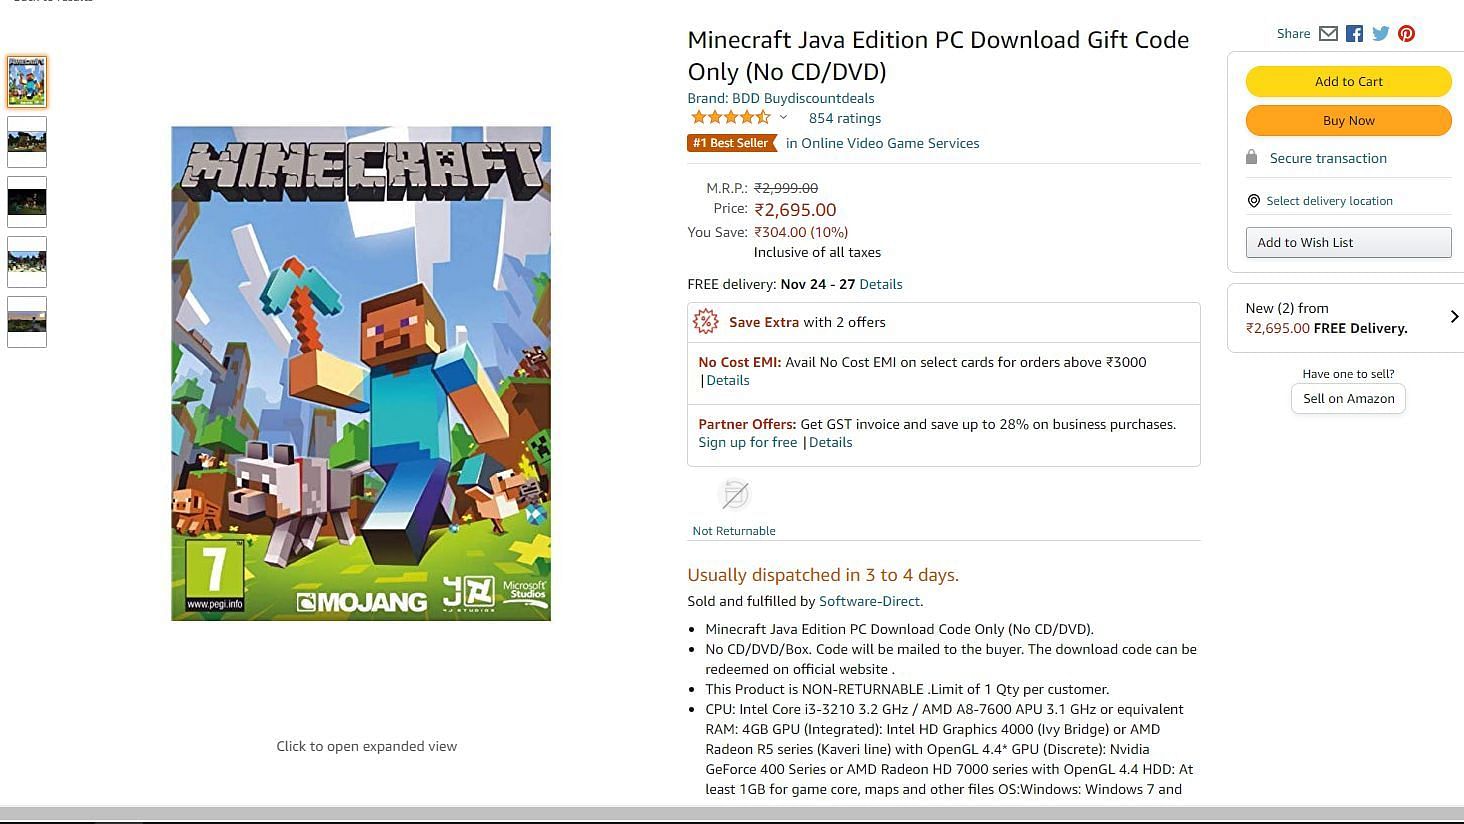 Minecraft Java Edition on Amazon (Image via Amazon)